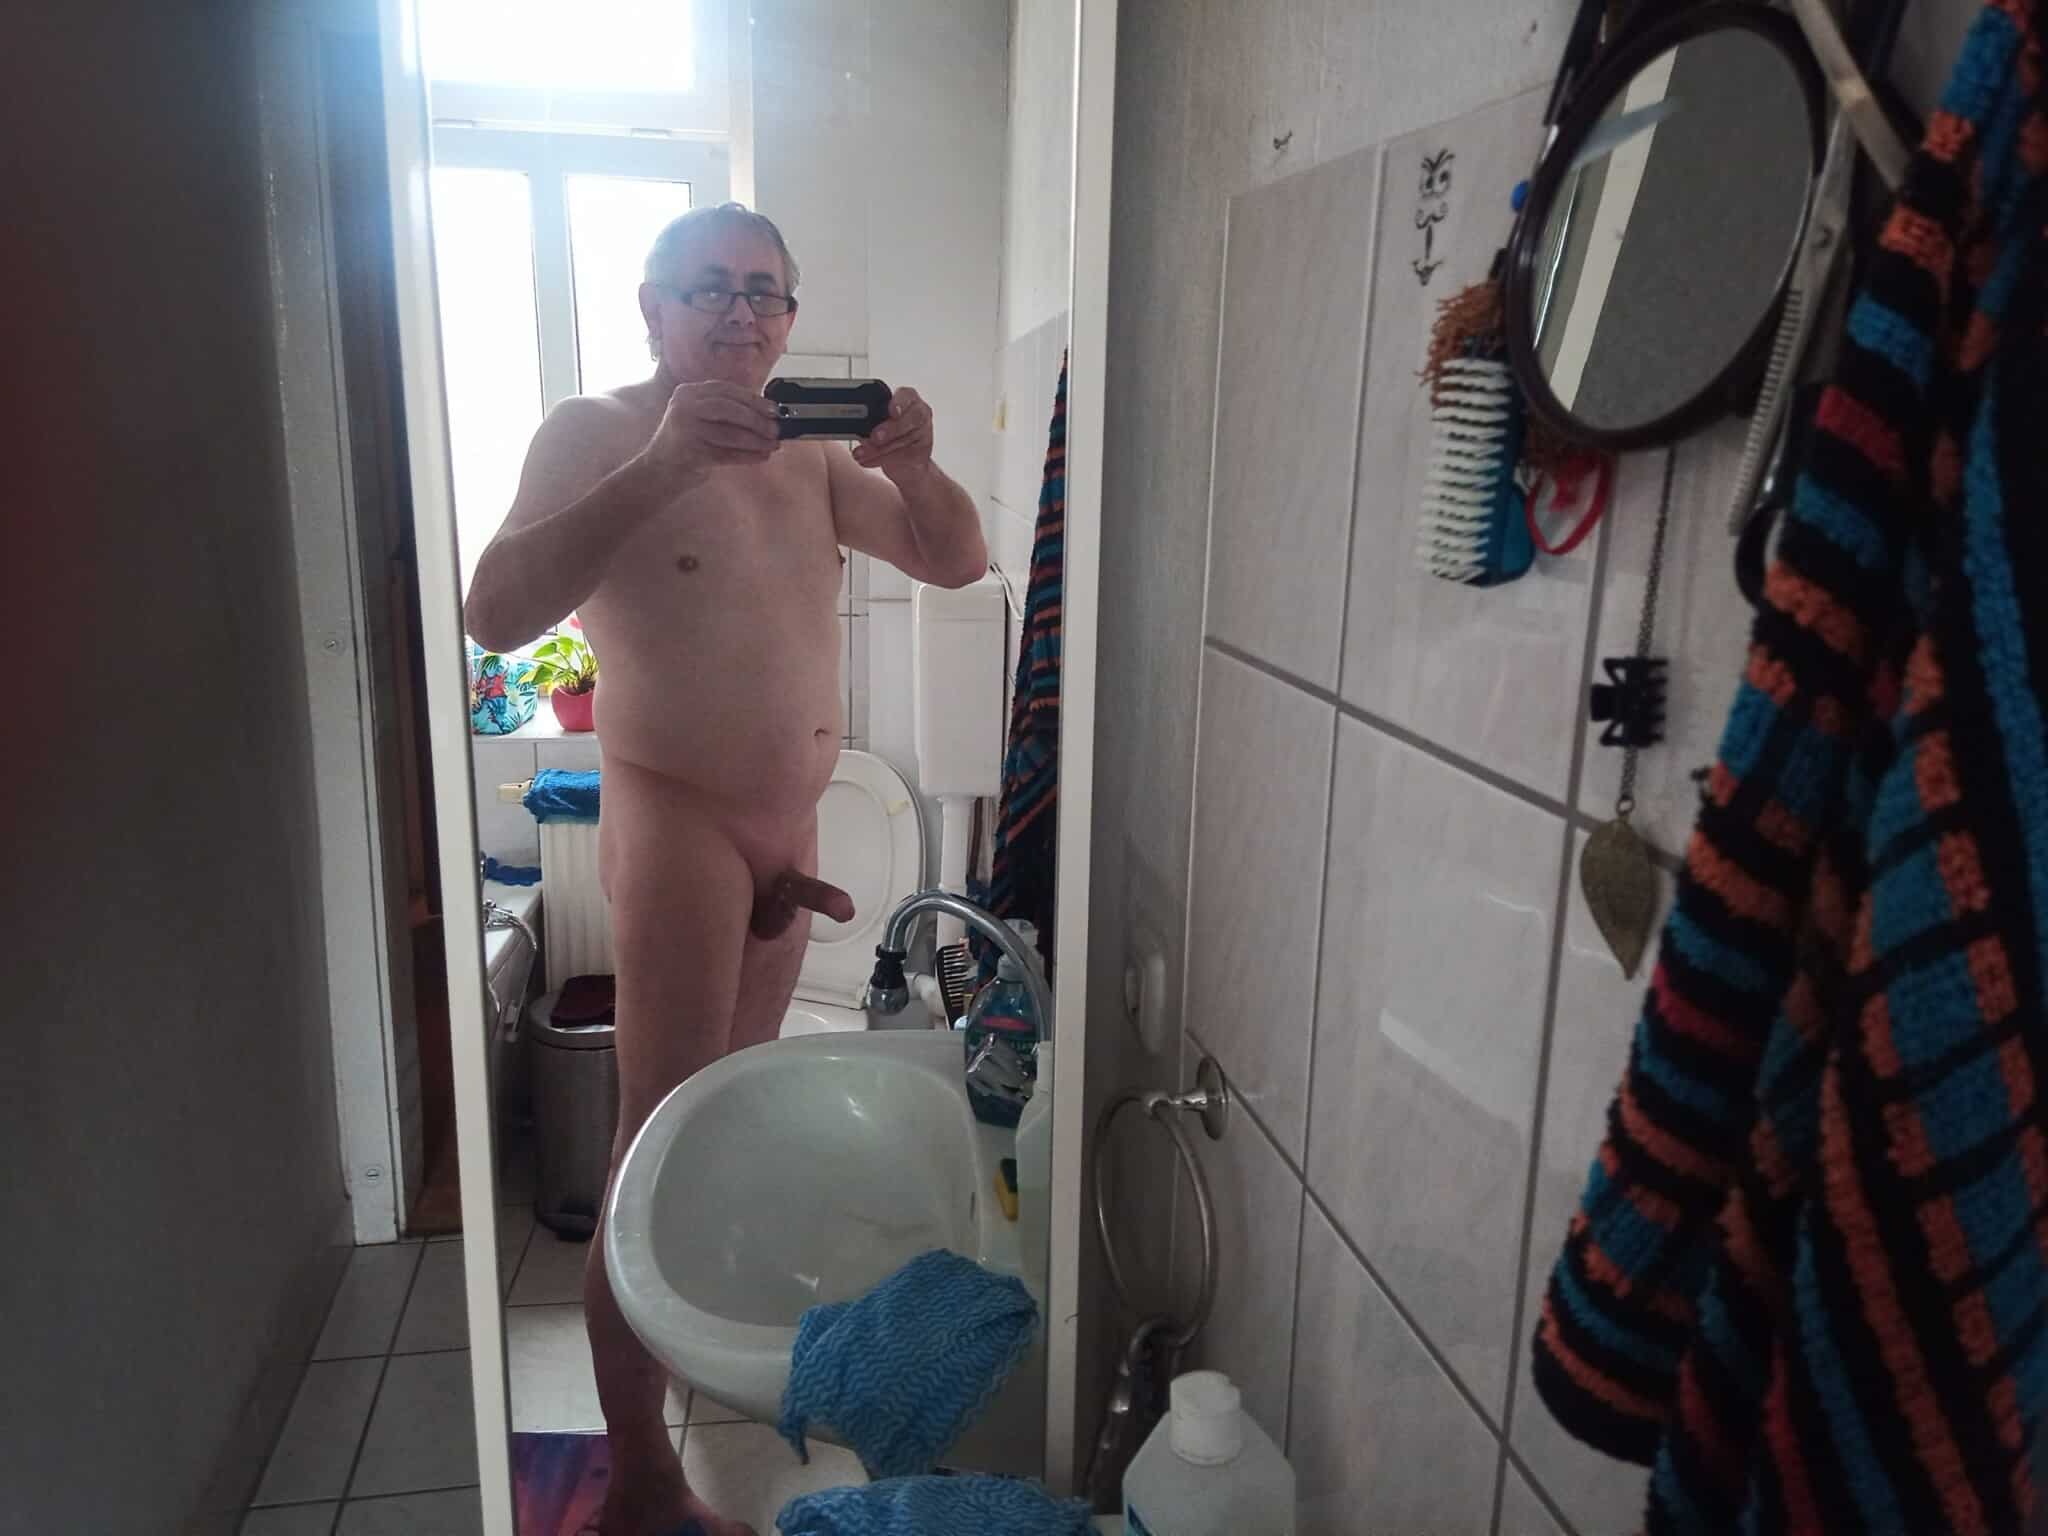 Older man bathroom selfie real nudity dick flash